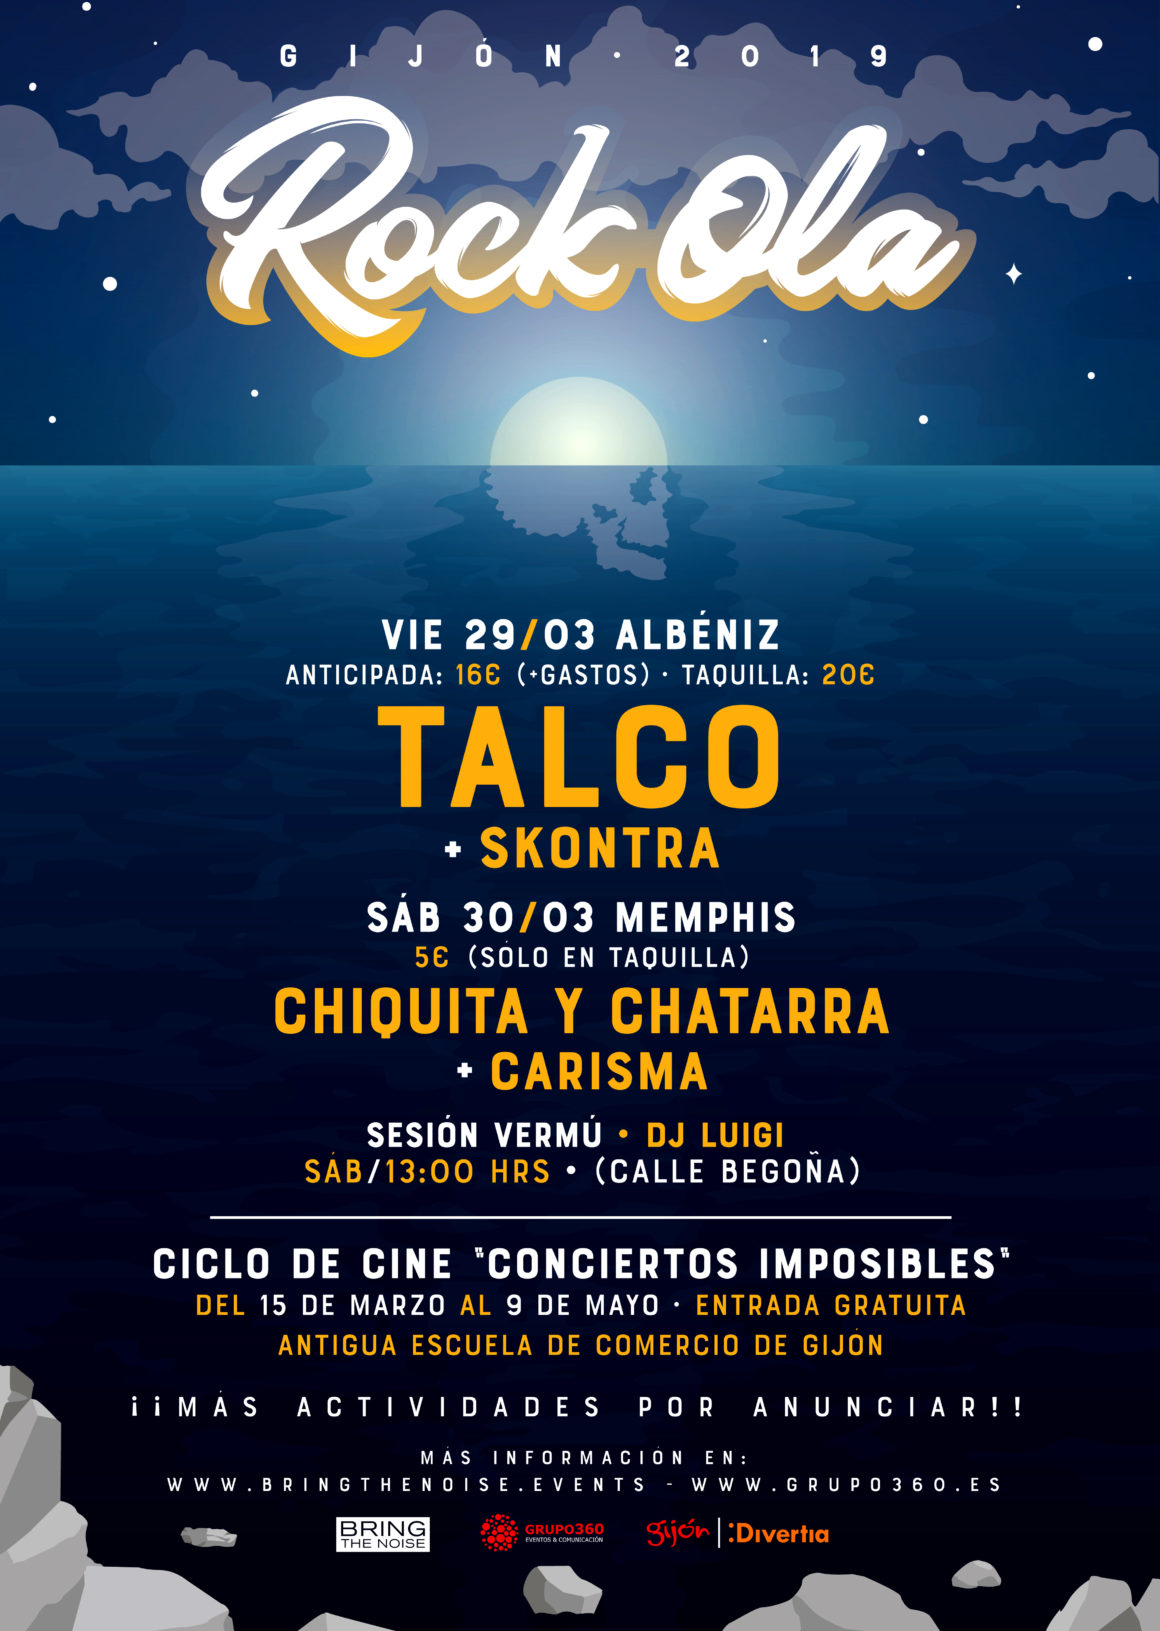 Nace un nuevo evento en Gijón: ¡bienvenidos a Rock-Ola!